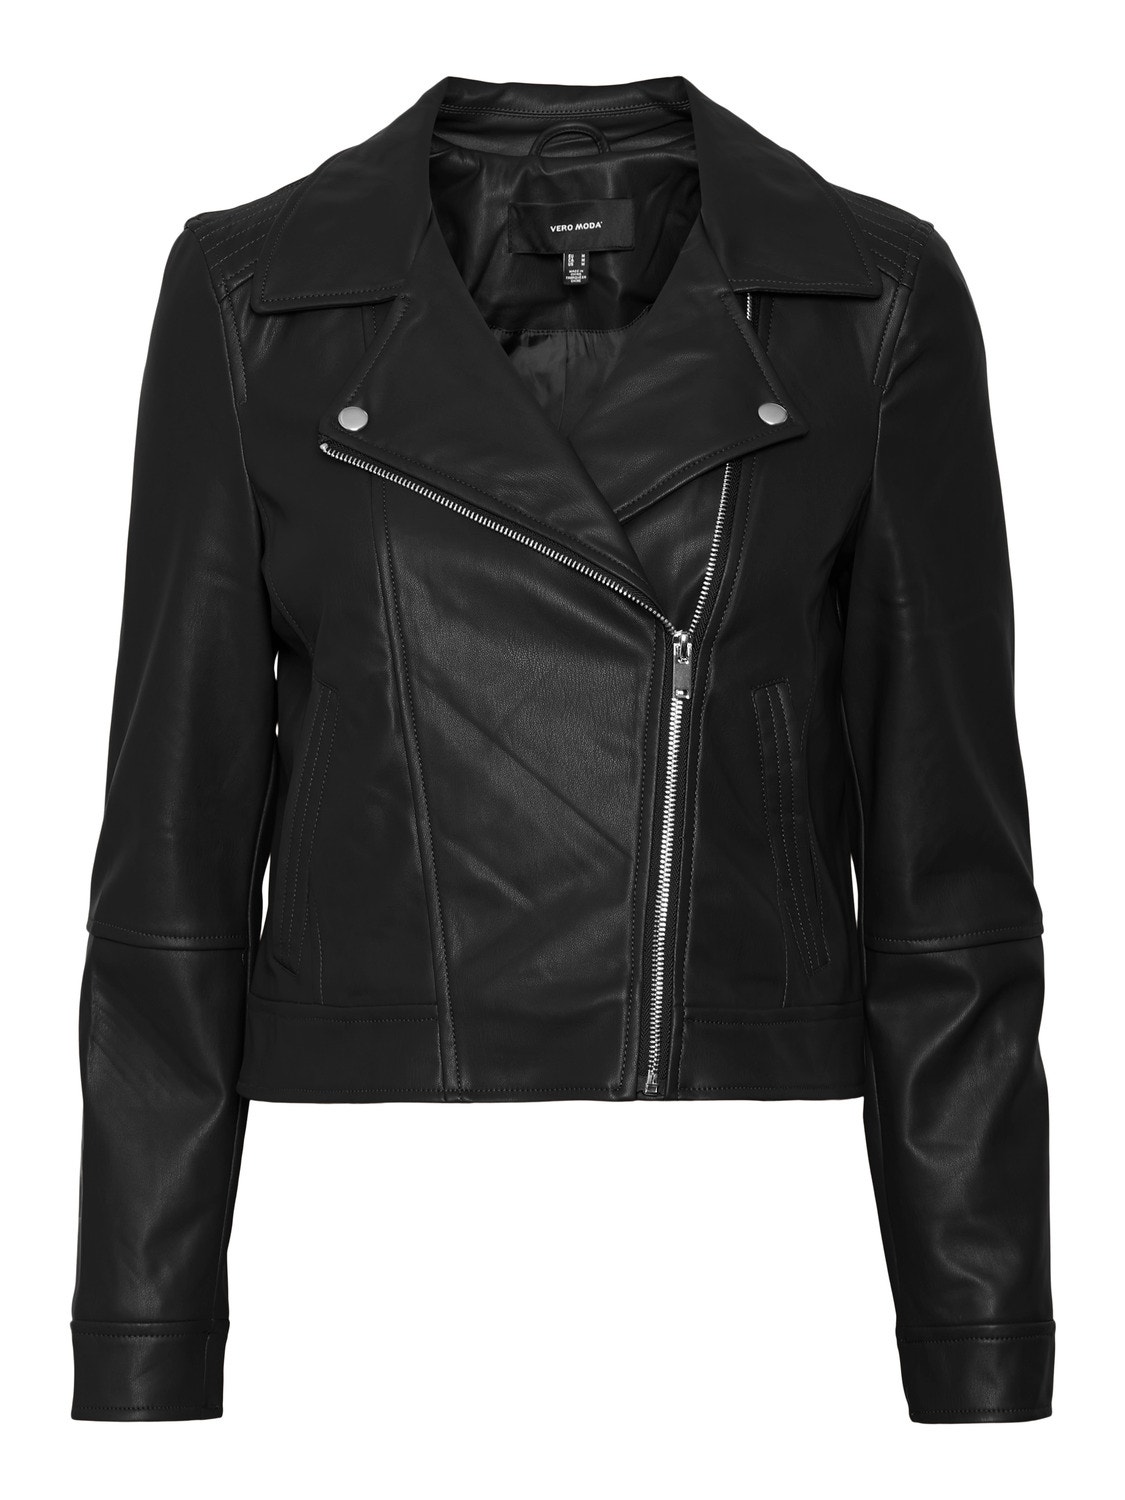 Vero Moda VMBELLA Jacket -Black - 10278269